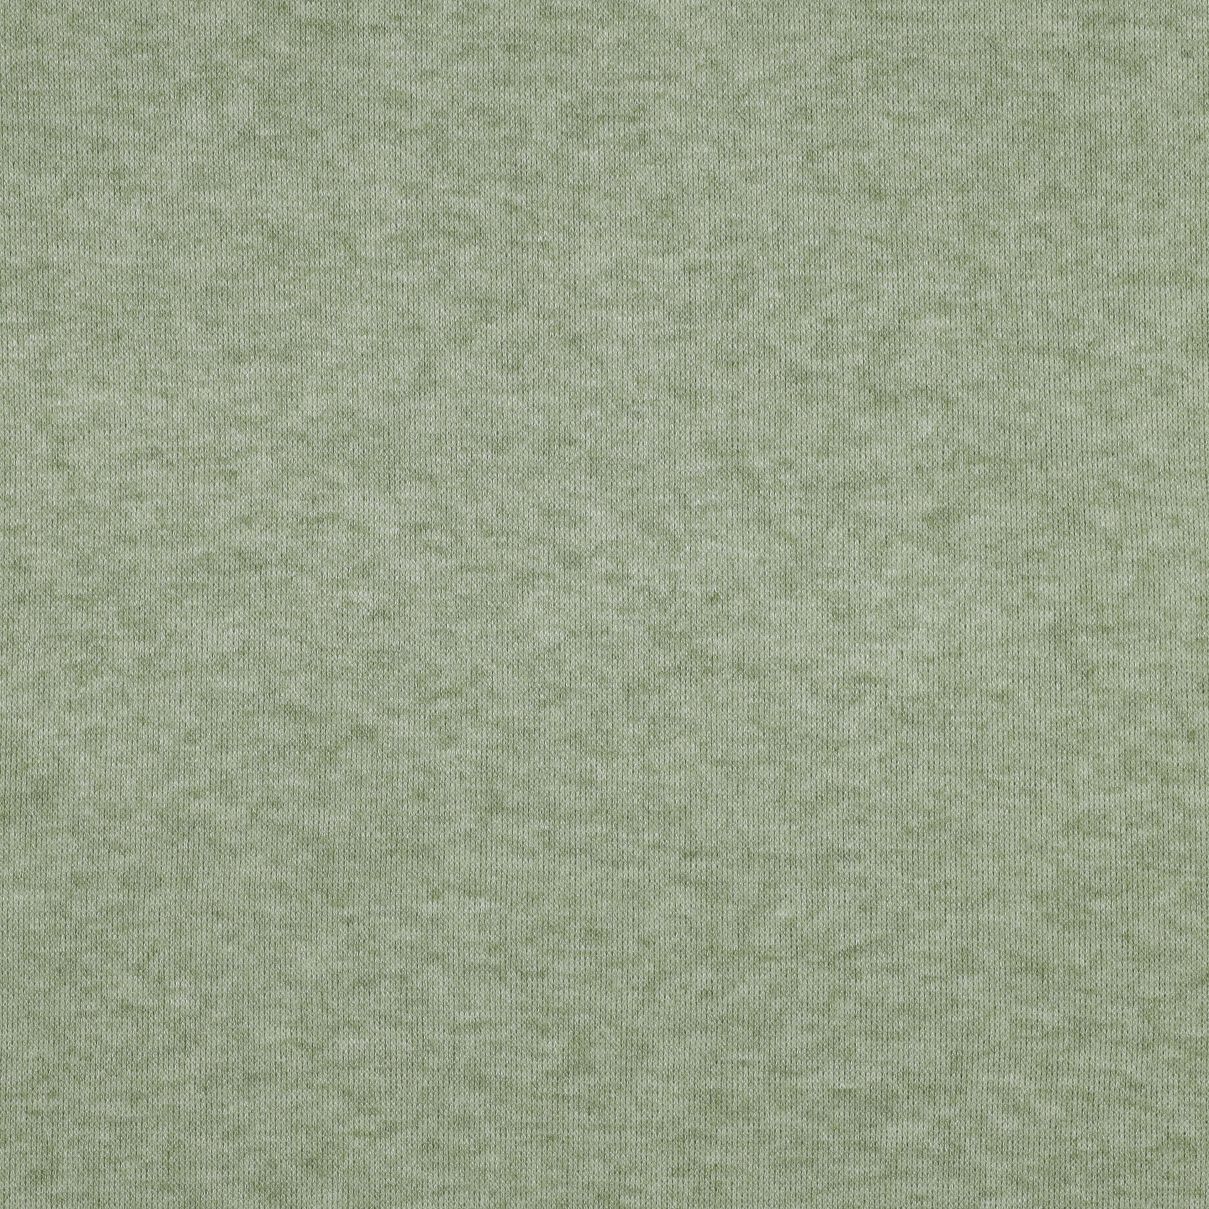 REMNANT 0.56 Metre - Snug Viscose Blend Sweater Knit in Lime Melange